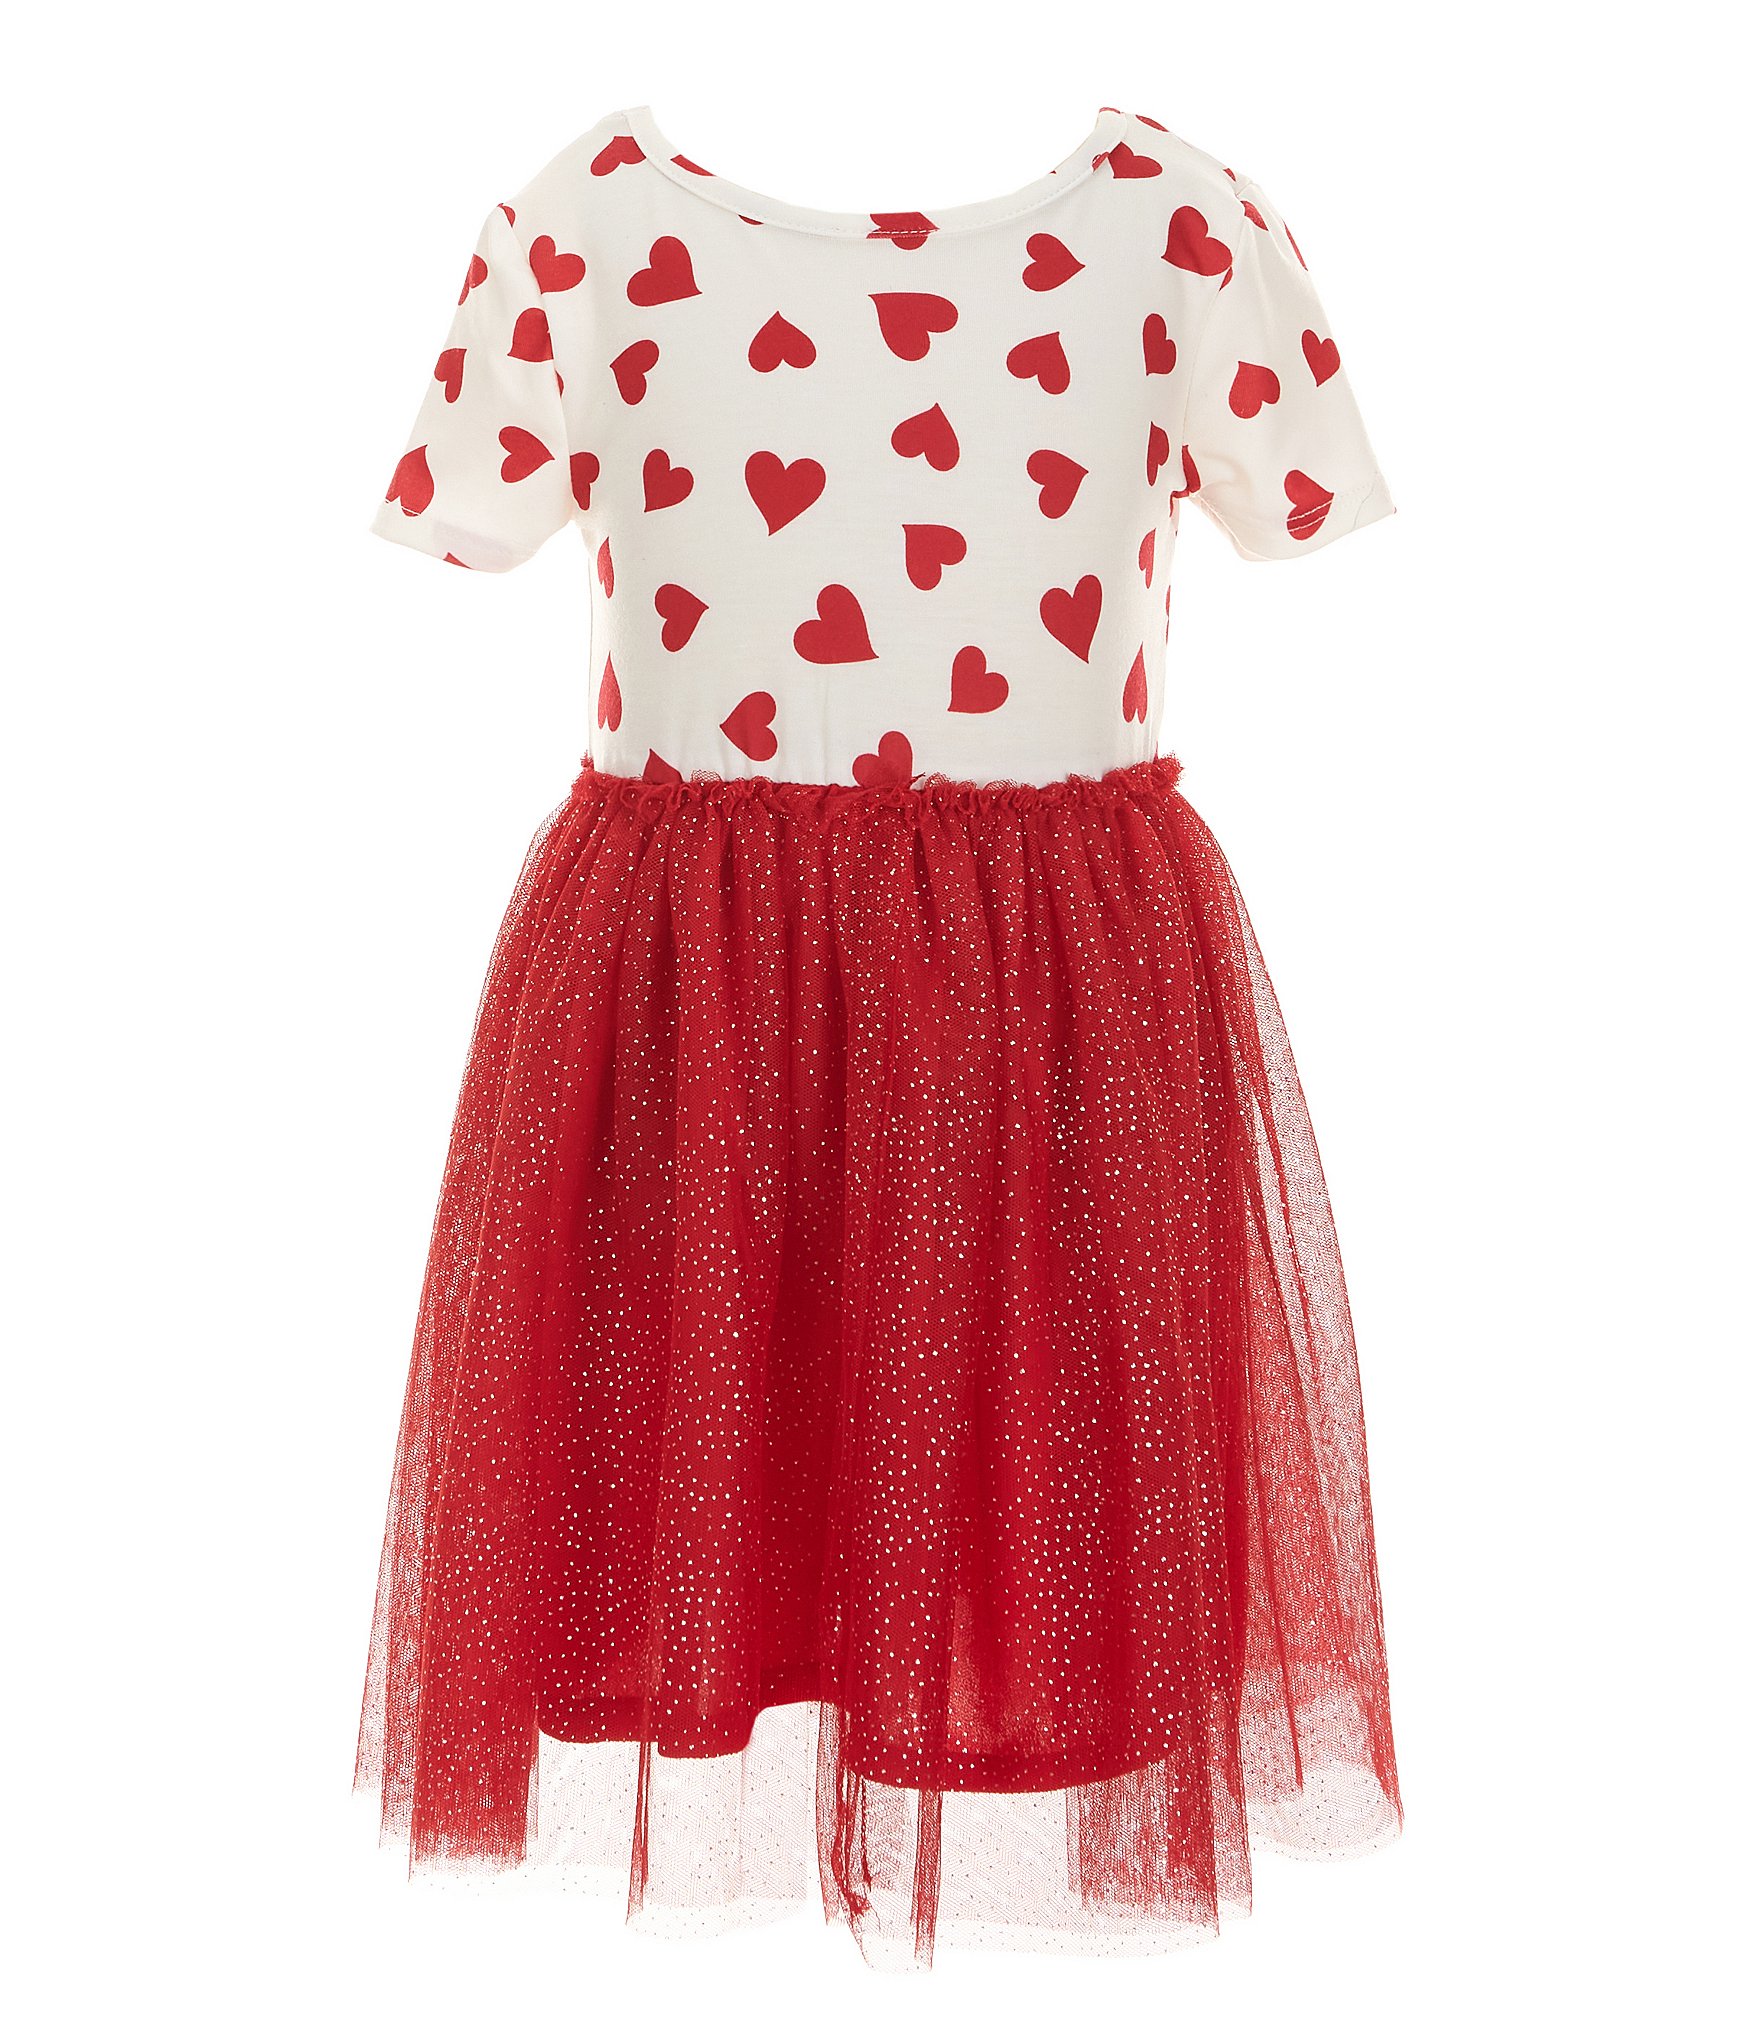 Zunie Little Girls 4-6X Short Sleeve Heart Printed Tutu Dress With ...